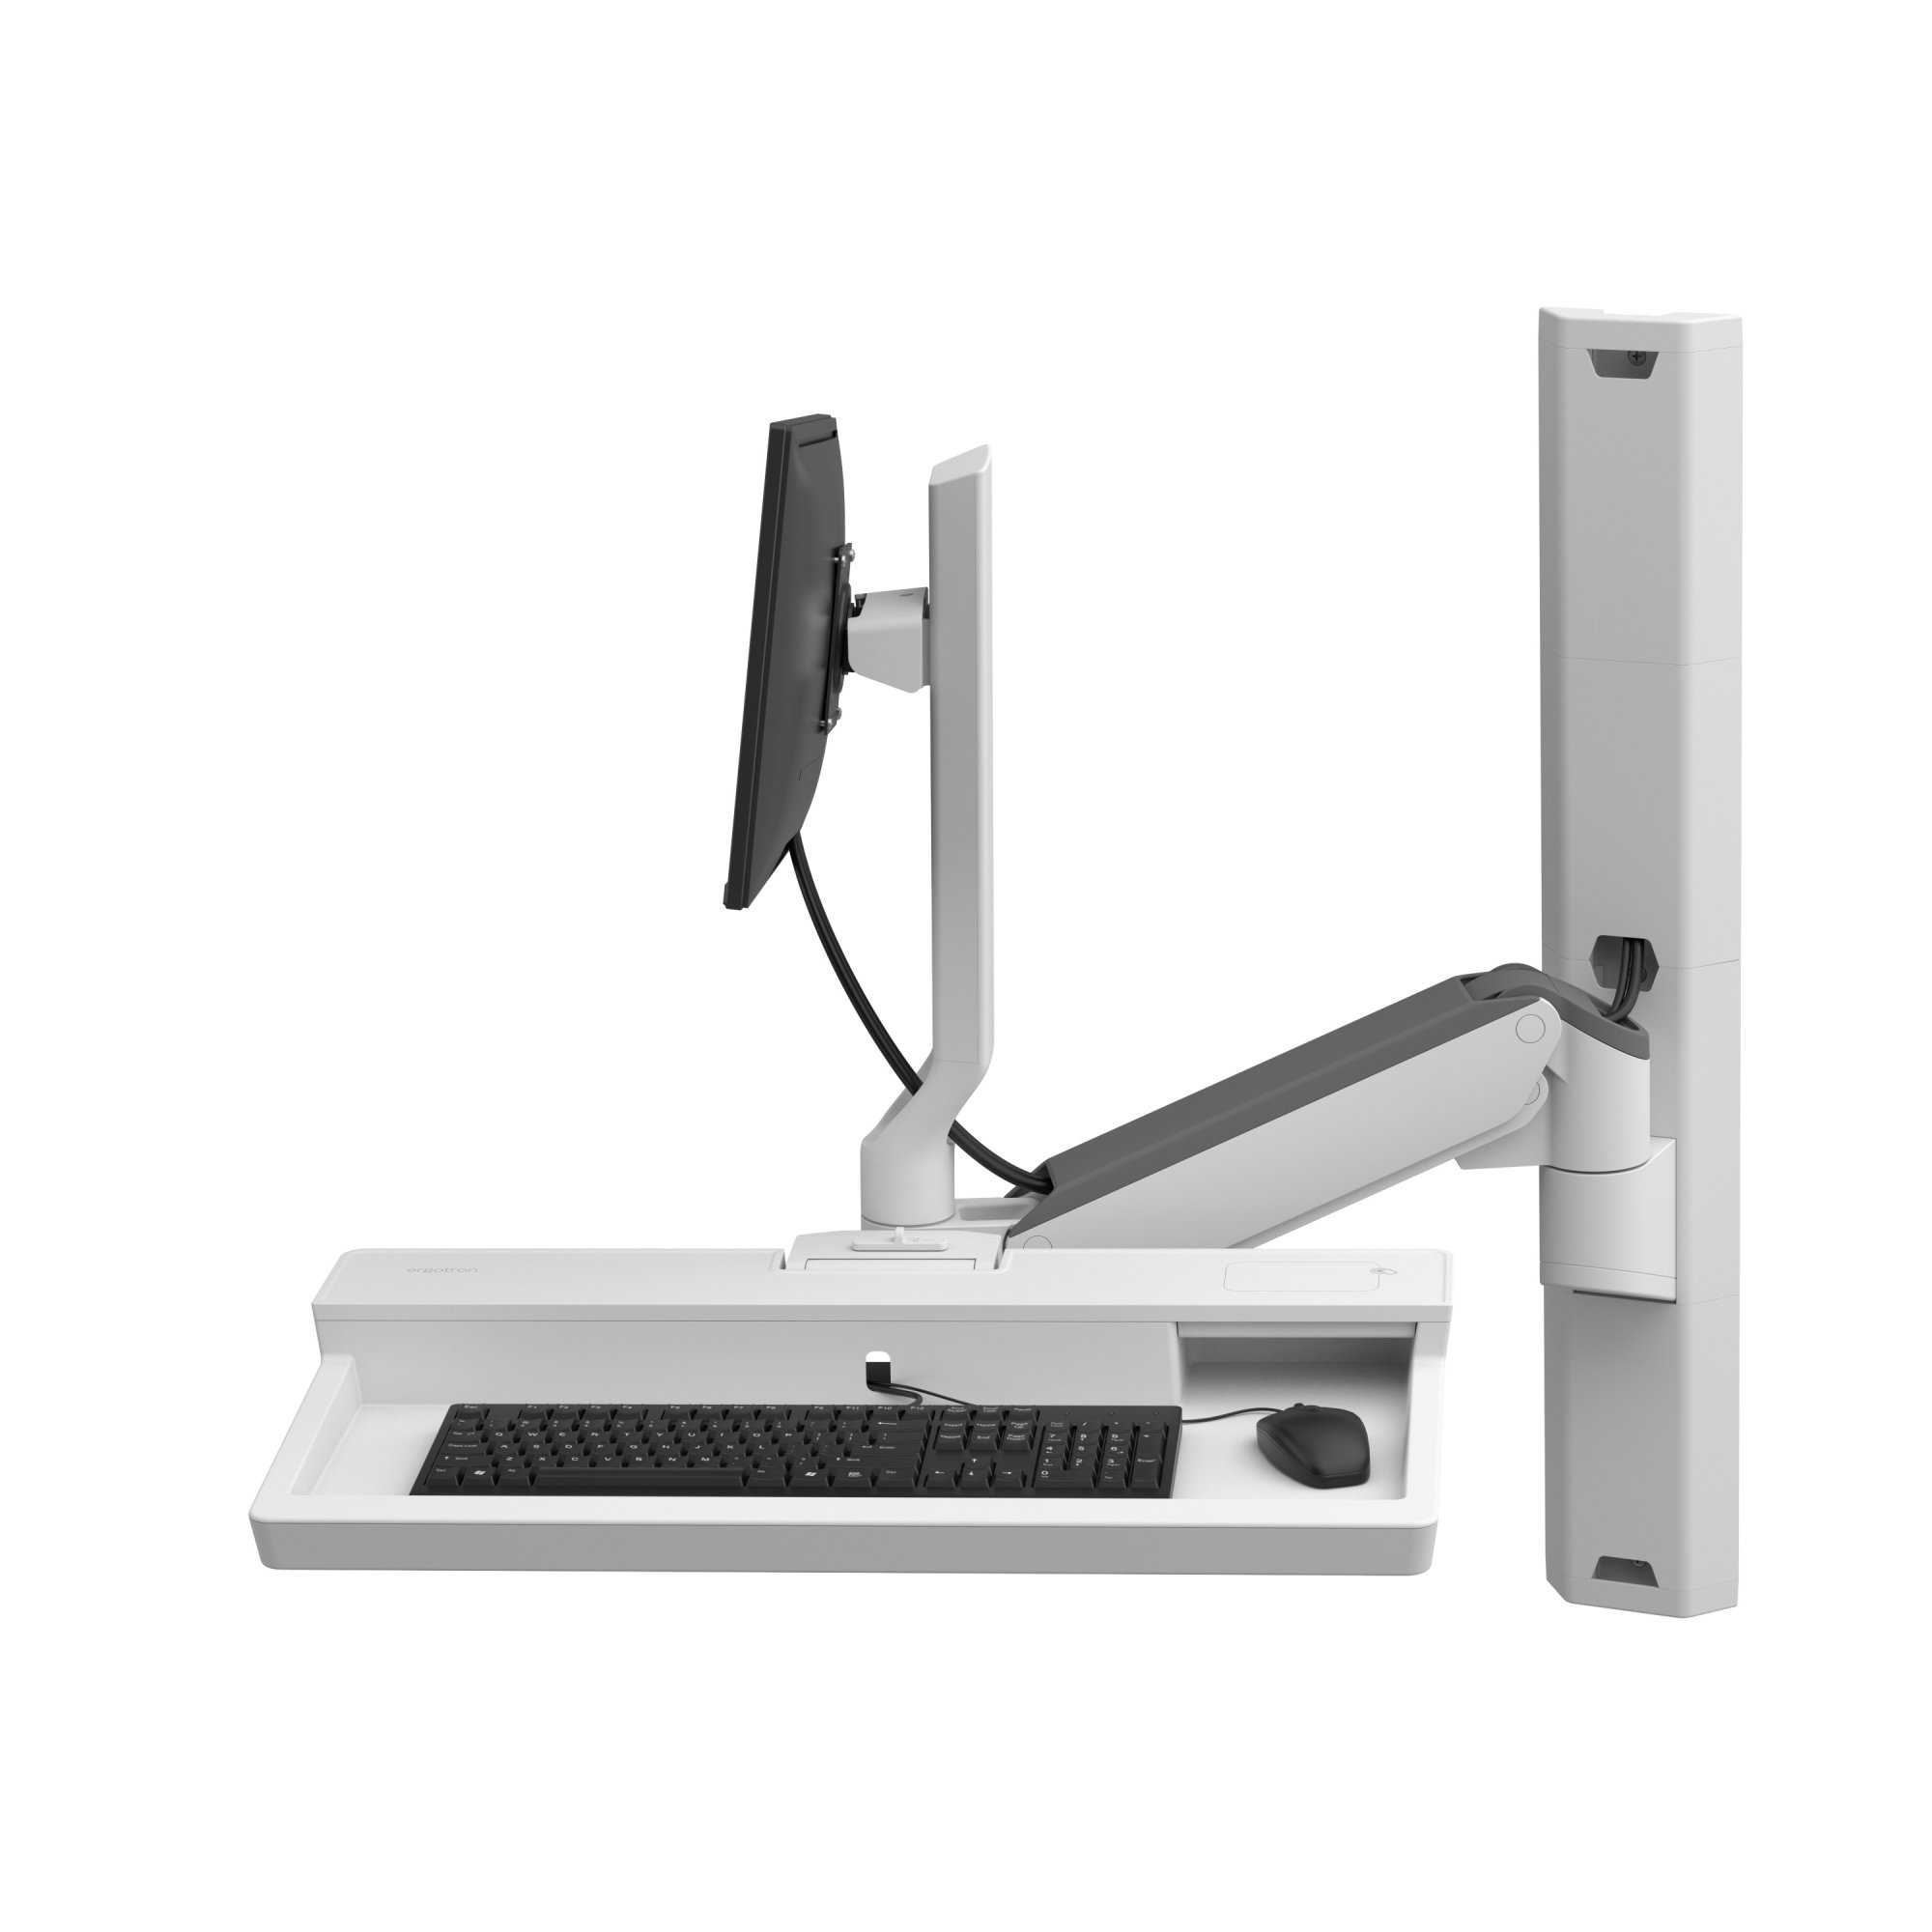 Ergotron 45-618-251 CareFit Combo Keyboard & Monitor Mount Workstation